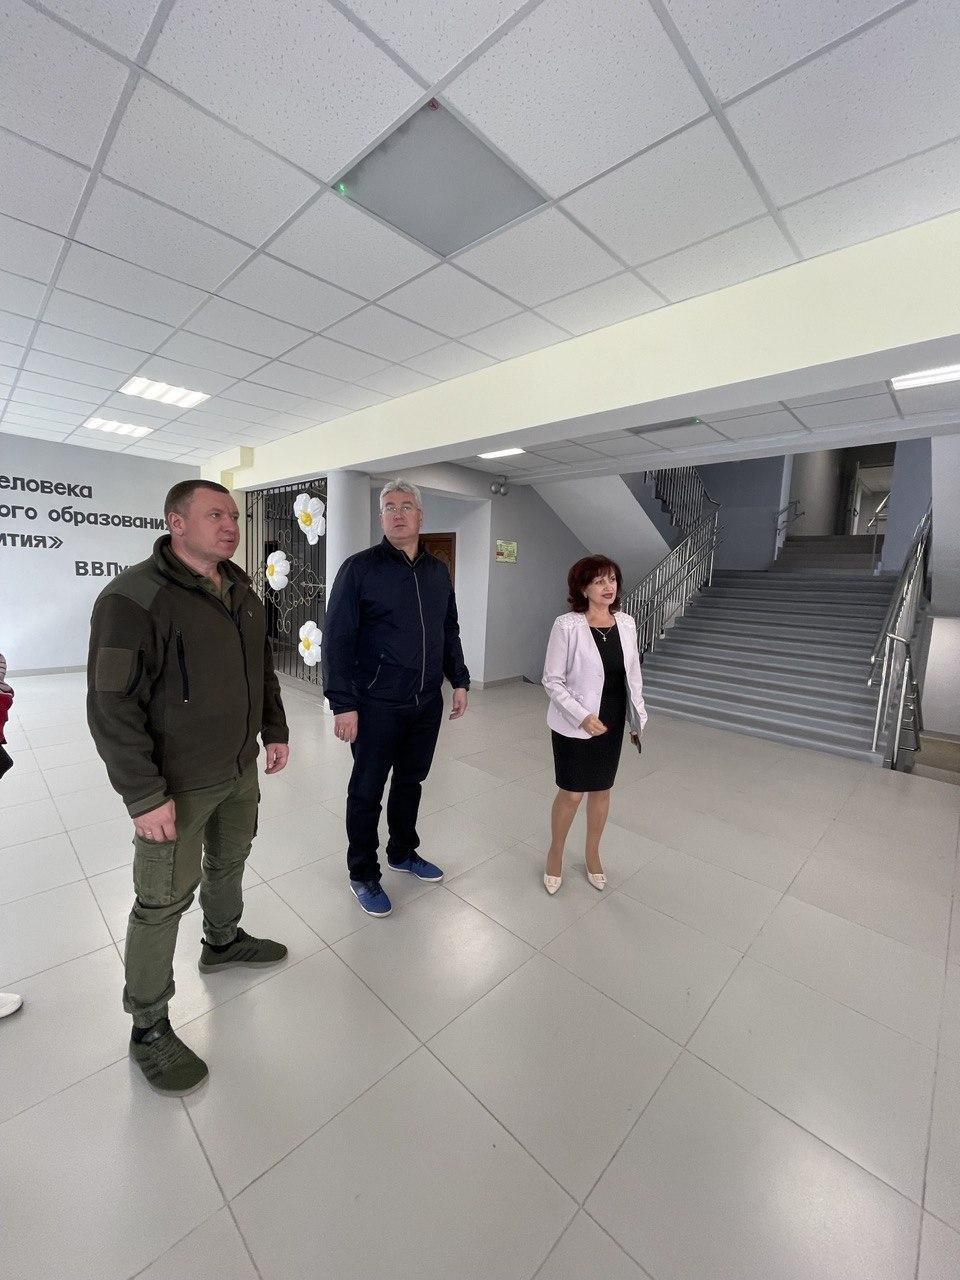 Врио первого вице-губернатора Самарской области оценил ход работ по восстановлению социальных объектов в городе Снежное.